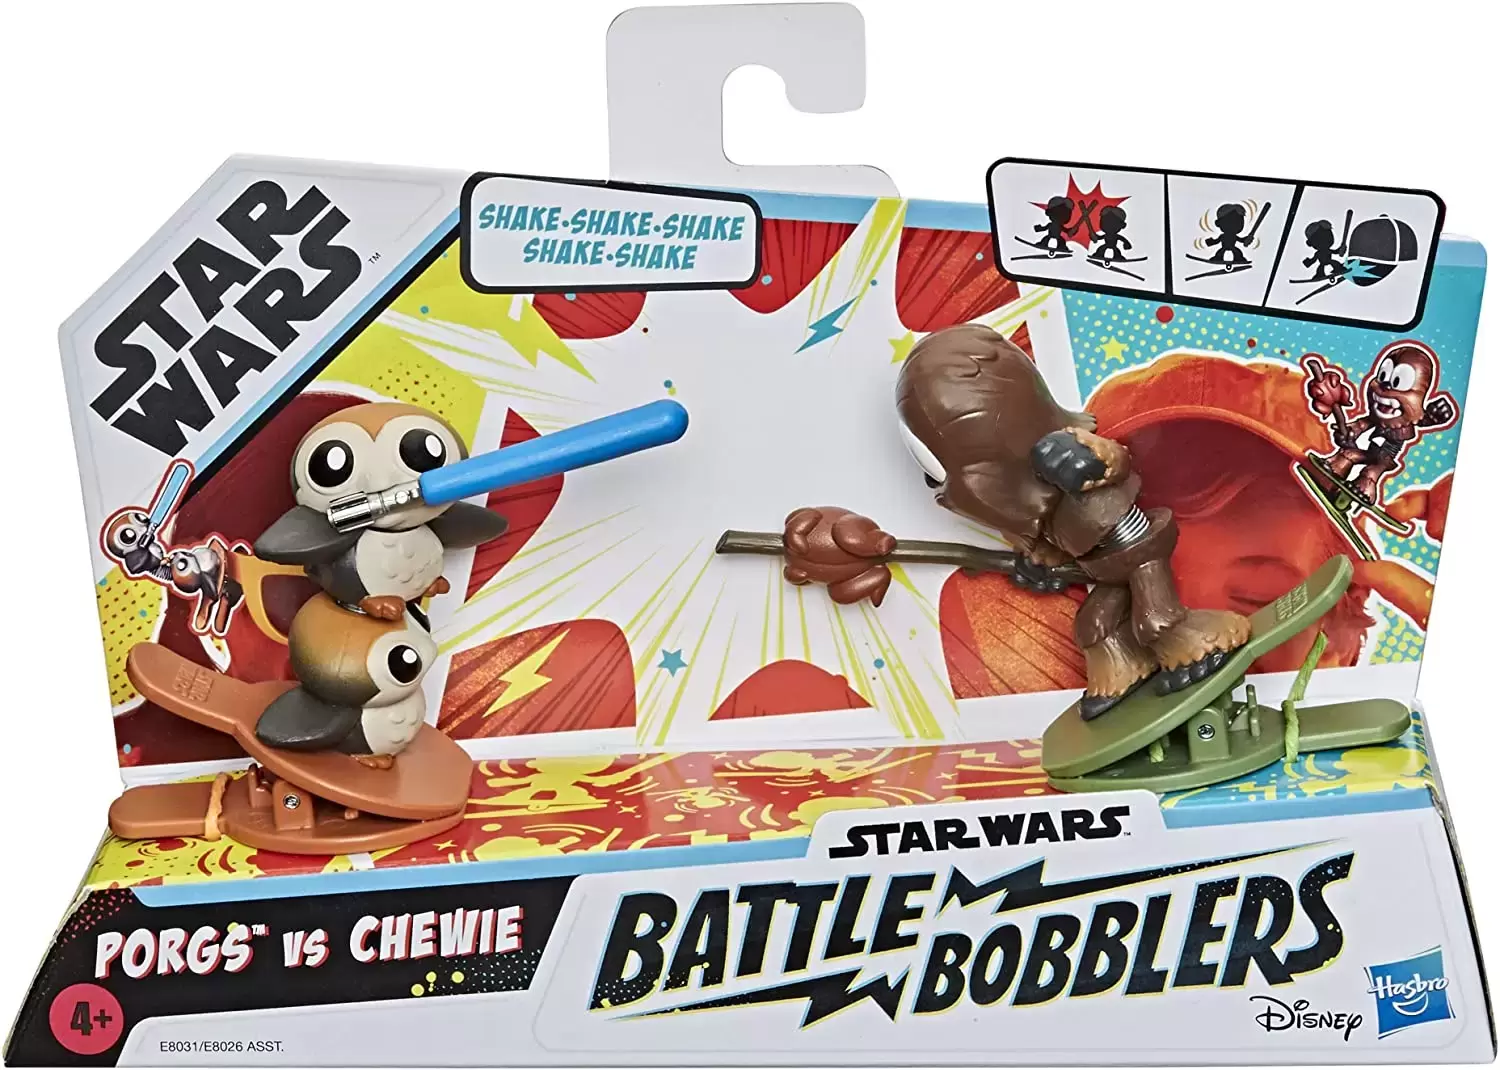 Star Wars Battle Bobblers - Porgs vs Chewie